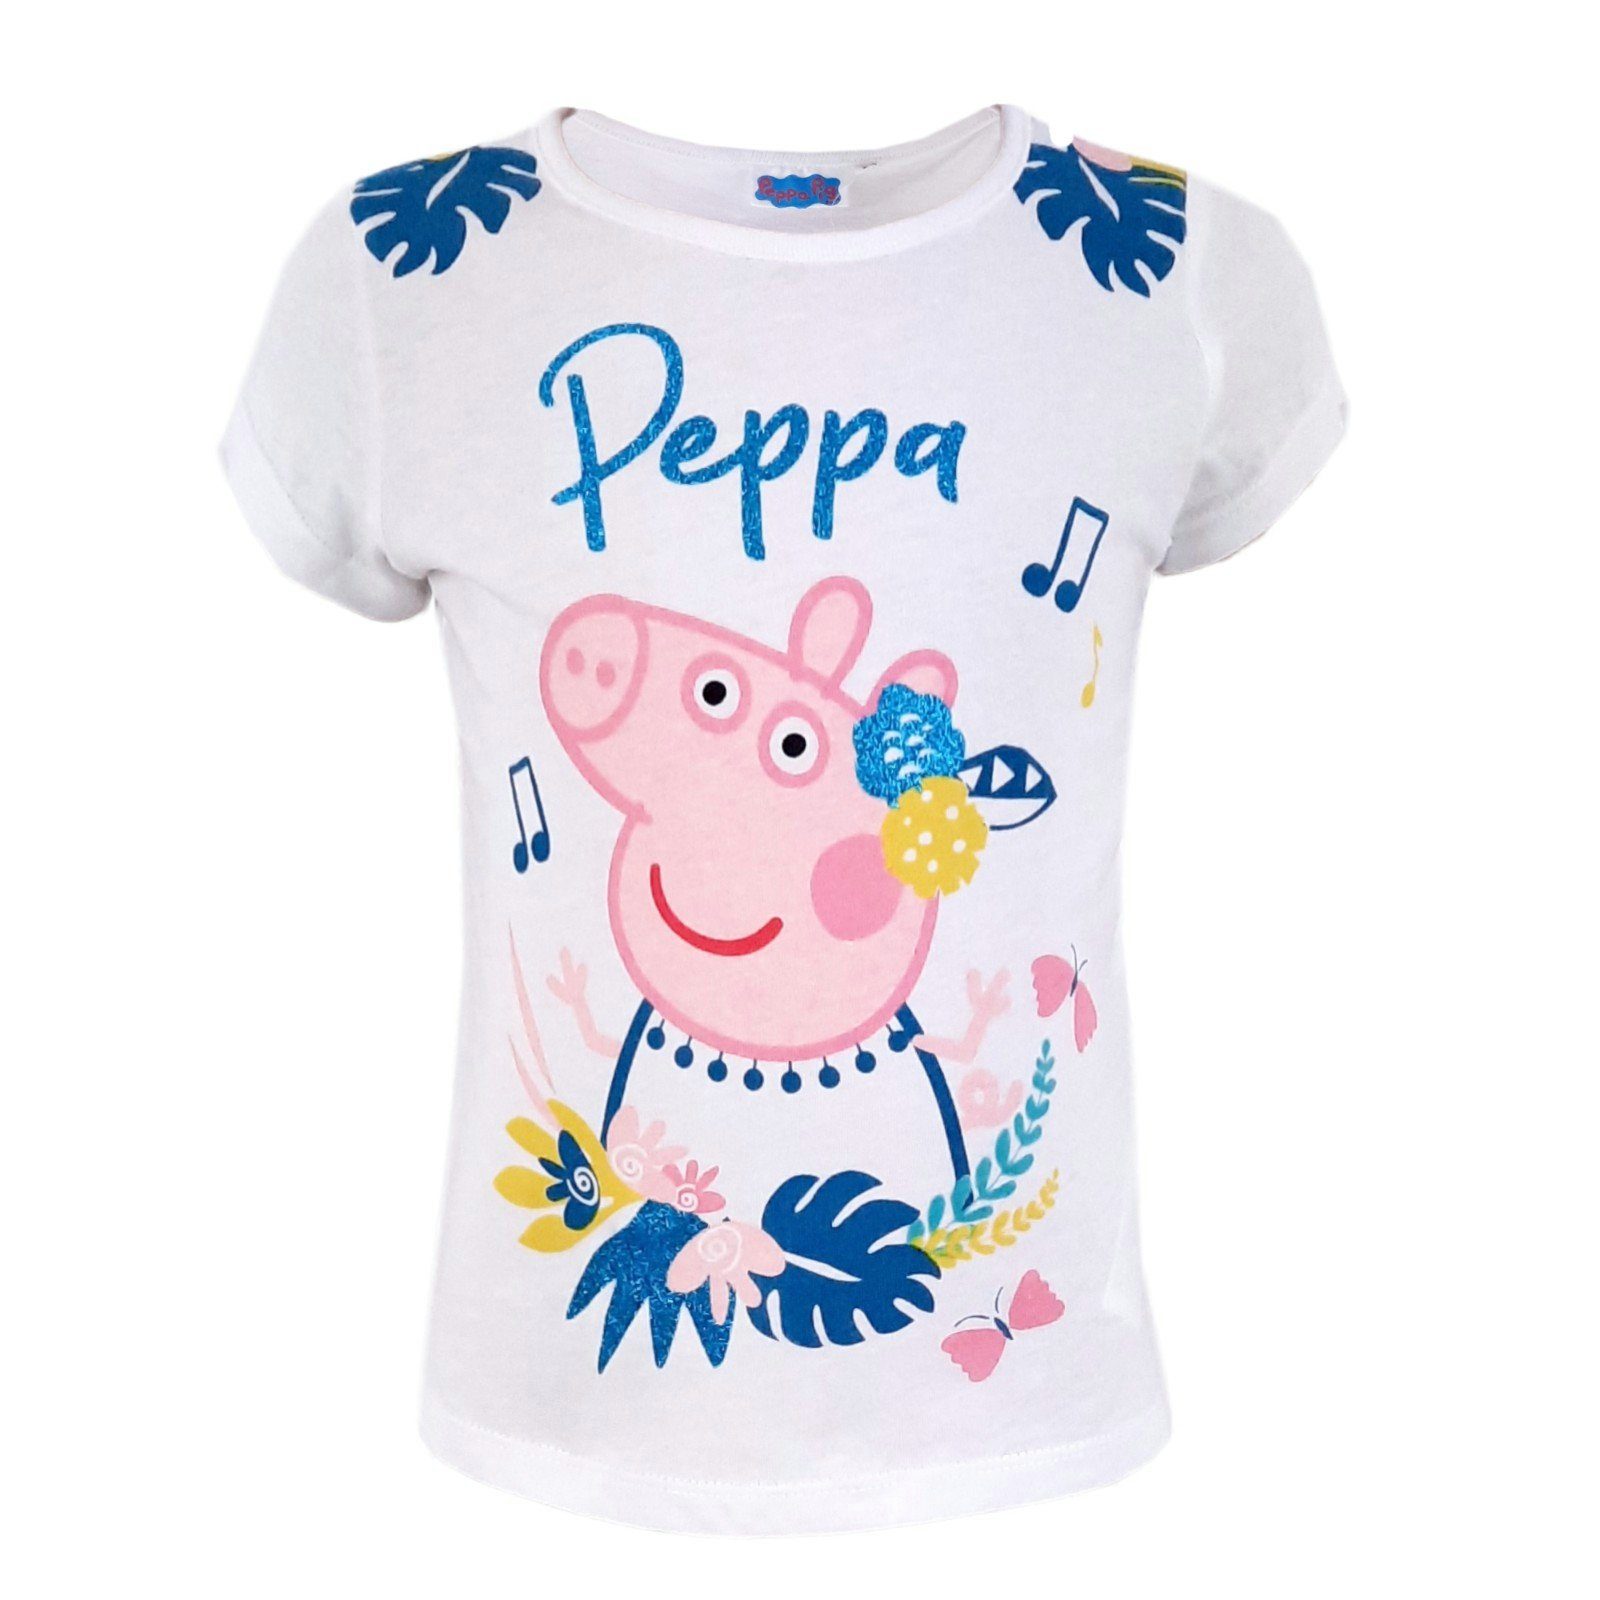 T-Shirt Pink Wutz Holyday kurzarm Baumwolle, Peppa Peppa Pig 100% Weiß Mädchen Shirt oder in